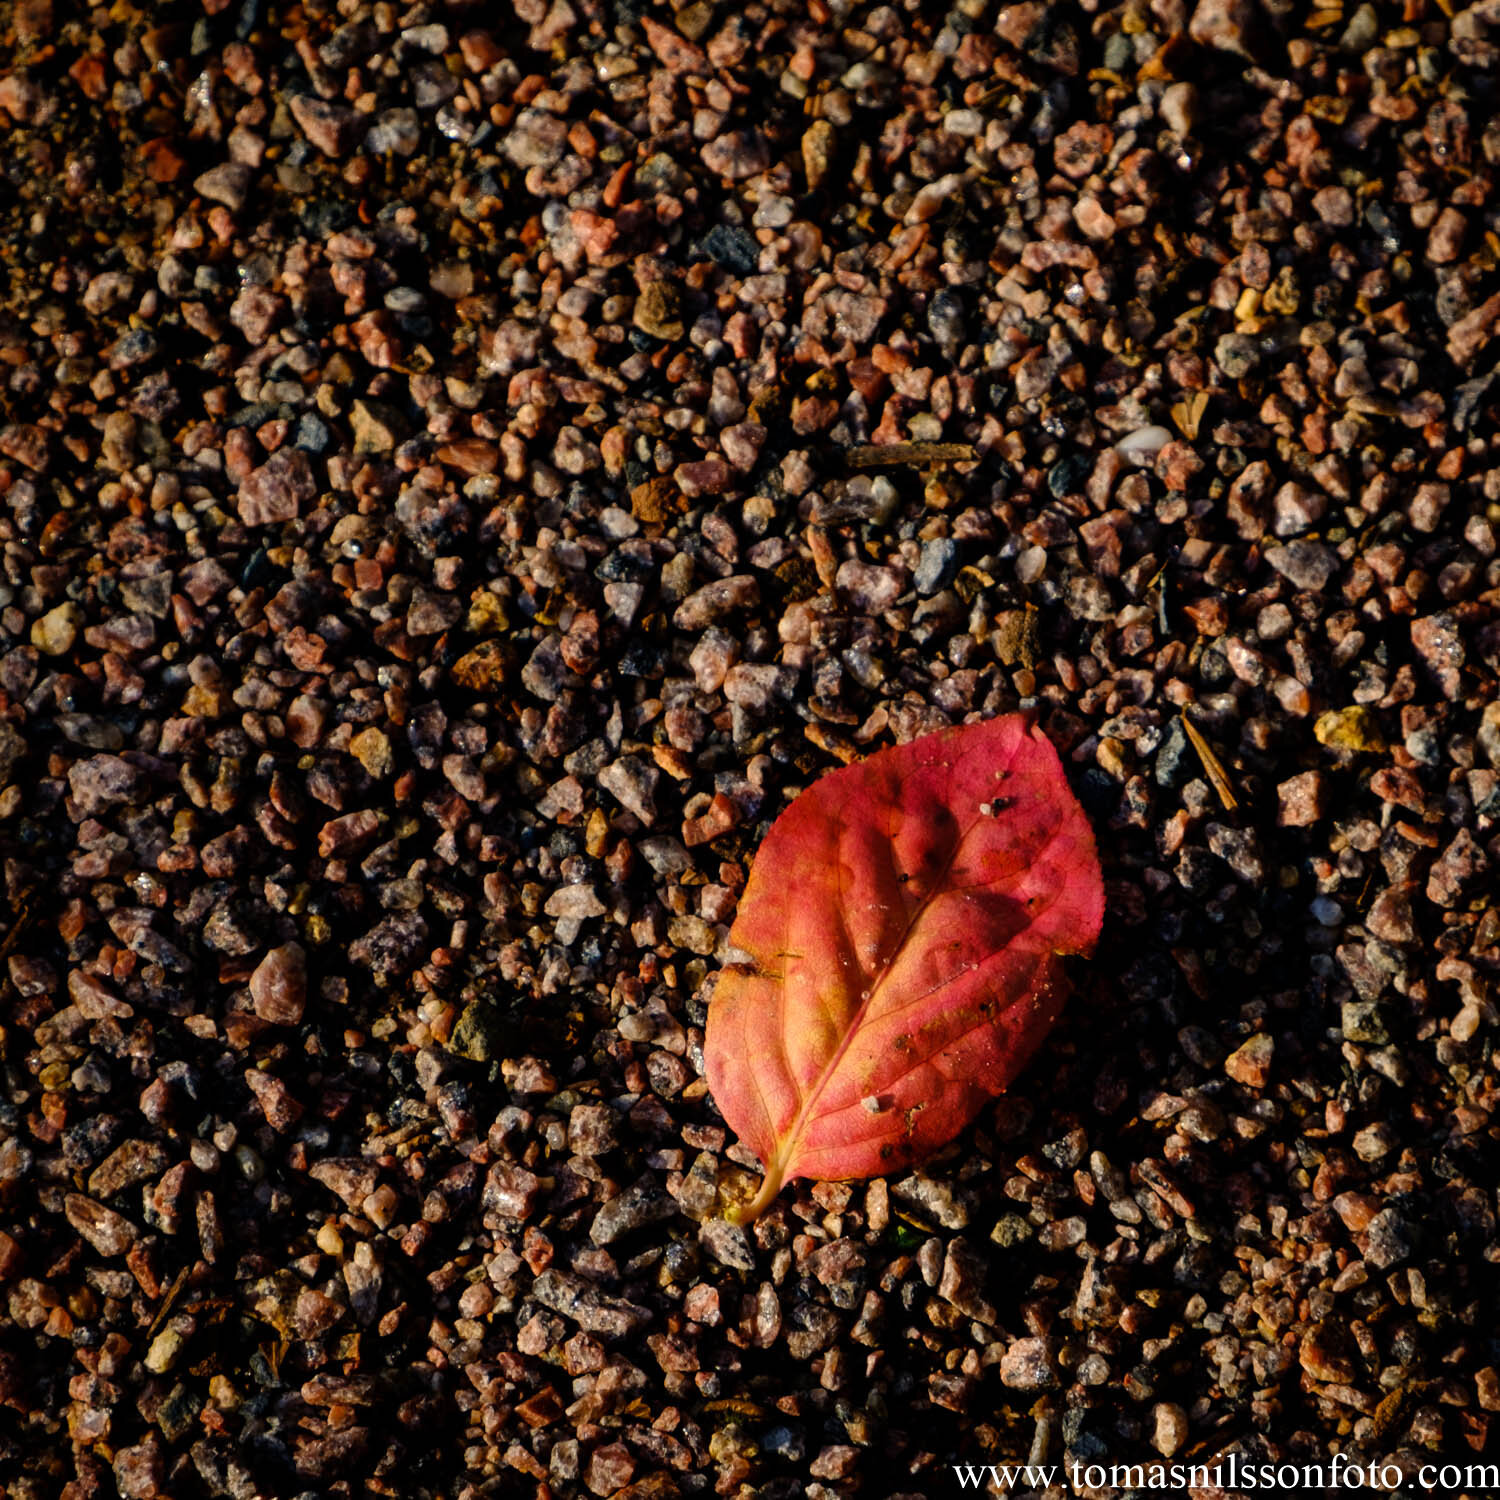 Day 279 - October 5: Red Leaf